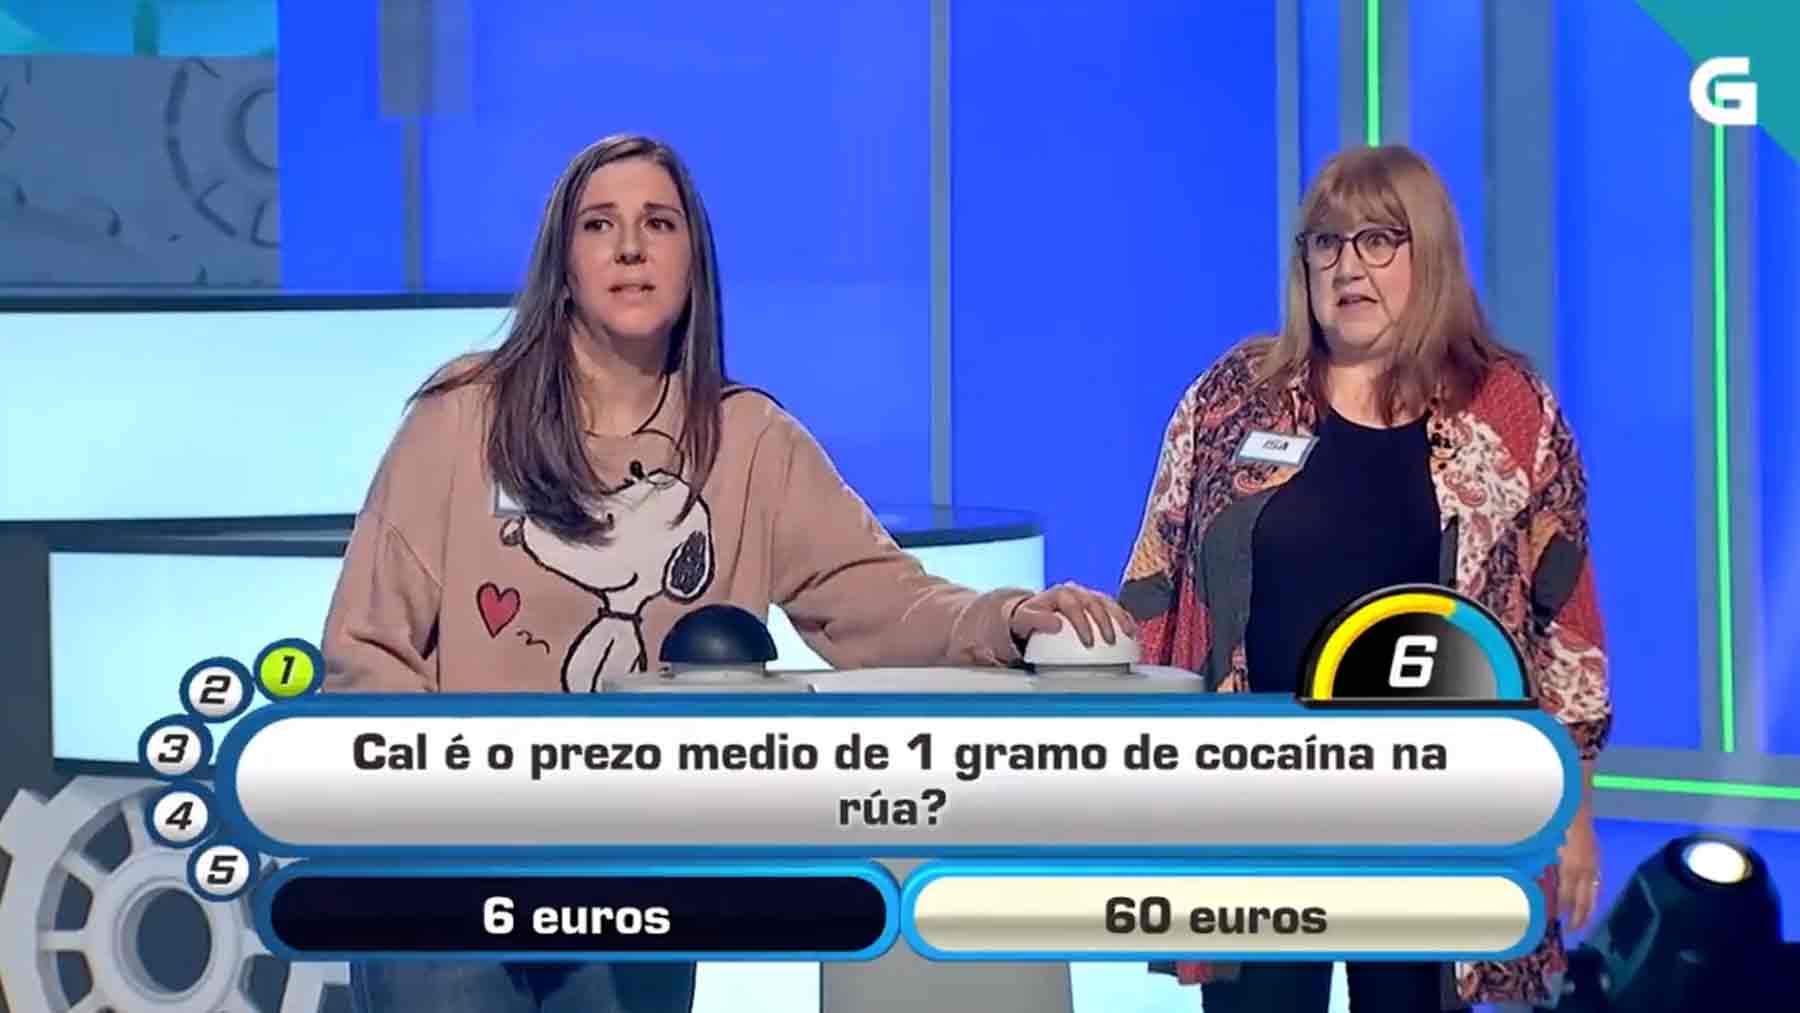 Concurso de la pregunta del gramo de cocaína.